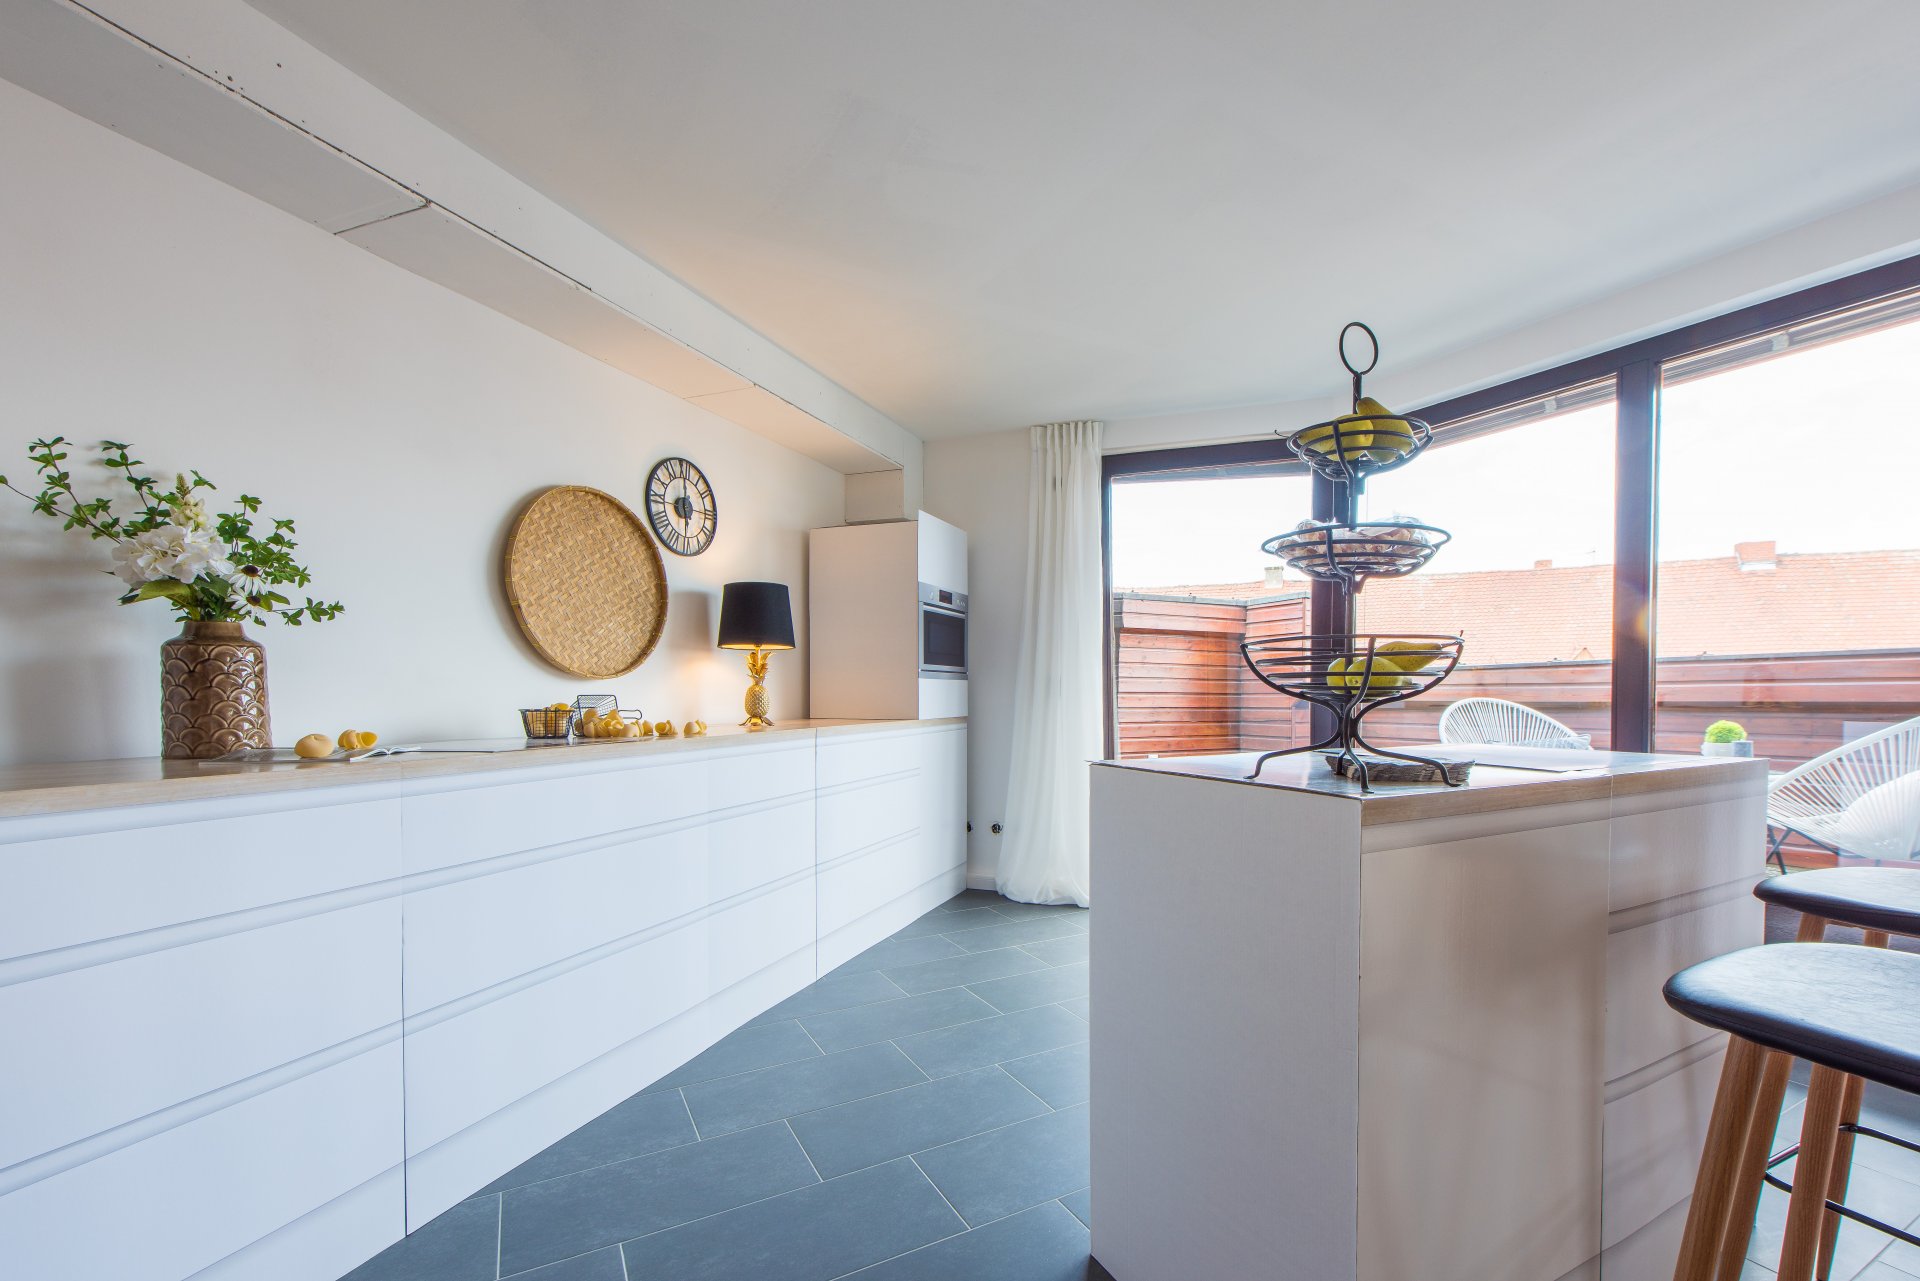 Offener Küchenraum mit bodentiefen Fenstern - Oliver Reifferscheid - Immobilienmakler Darmstadt